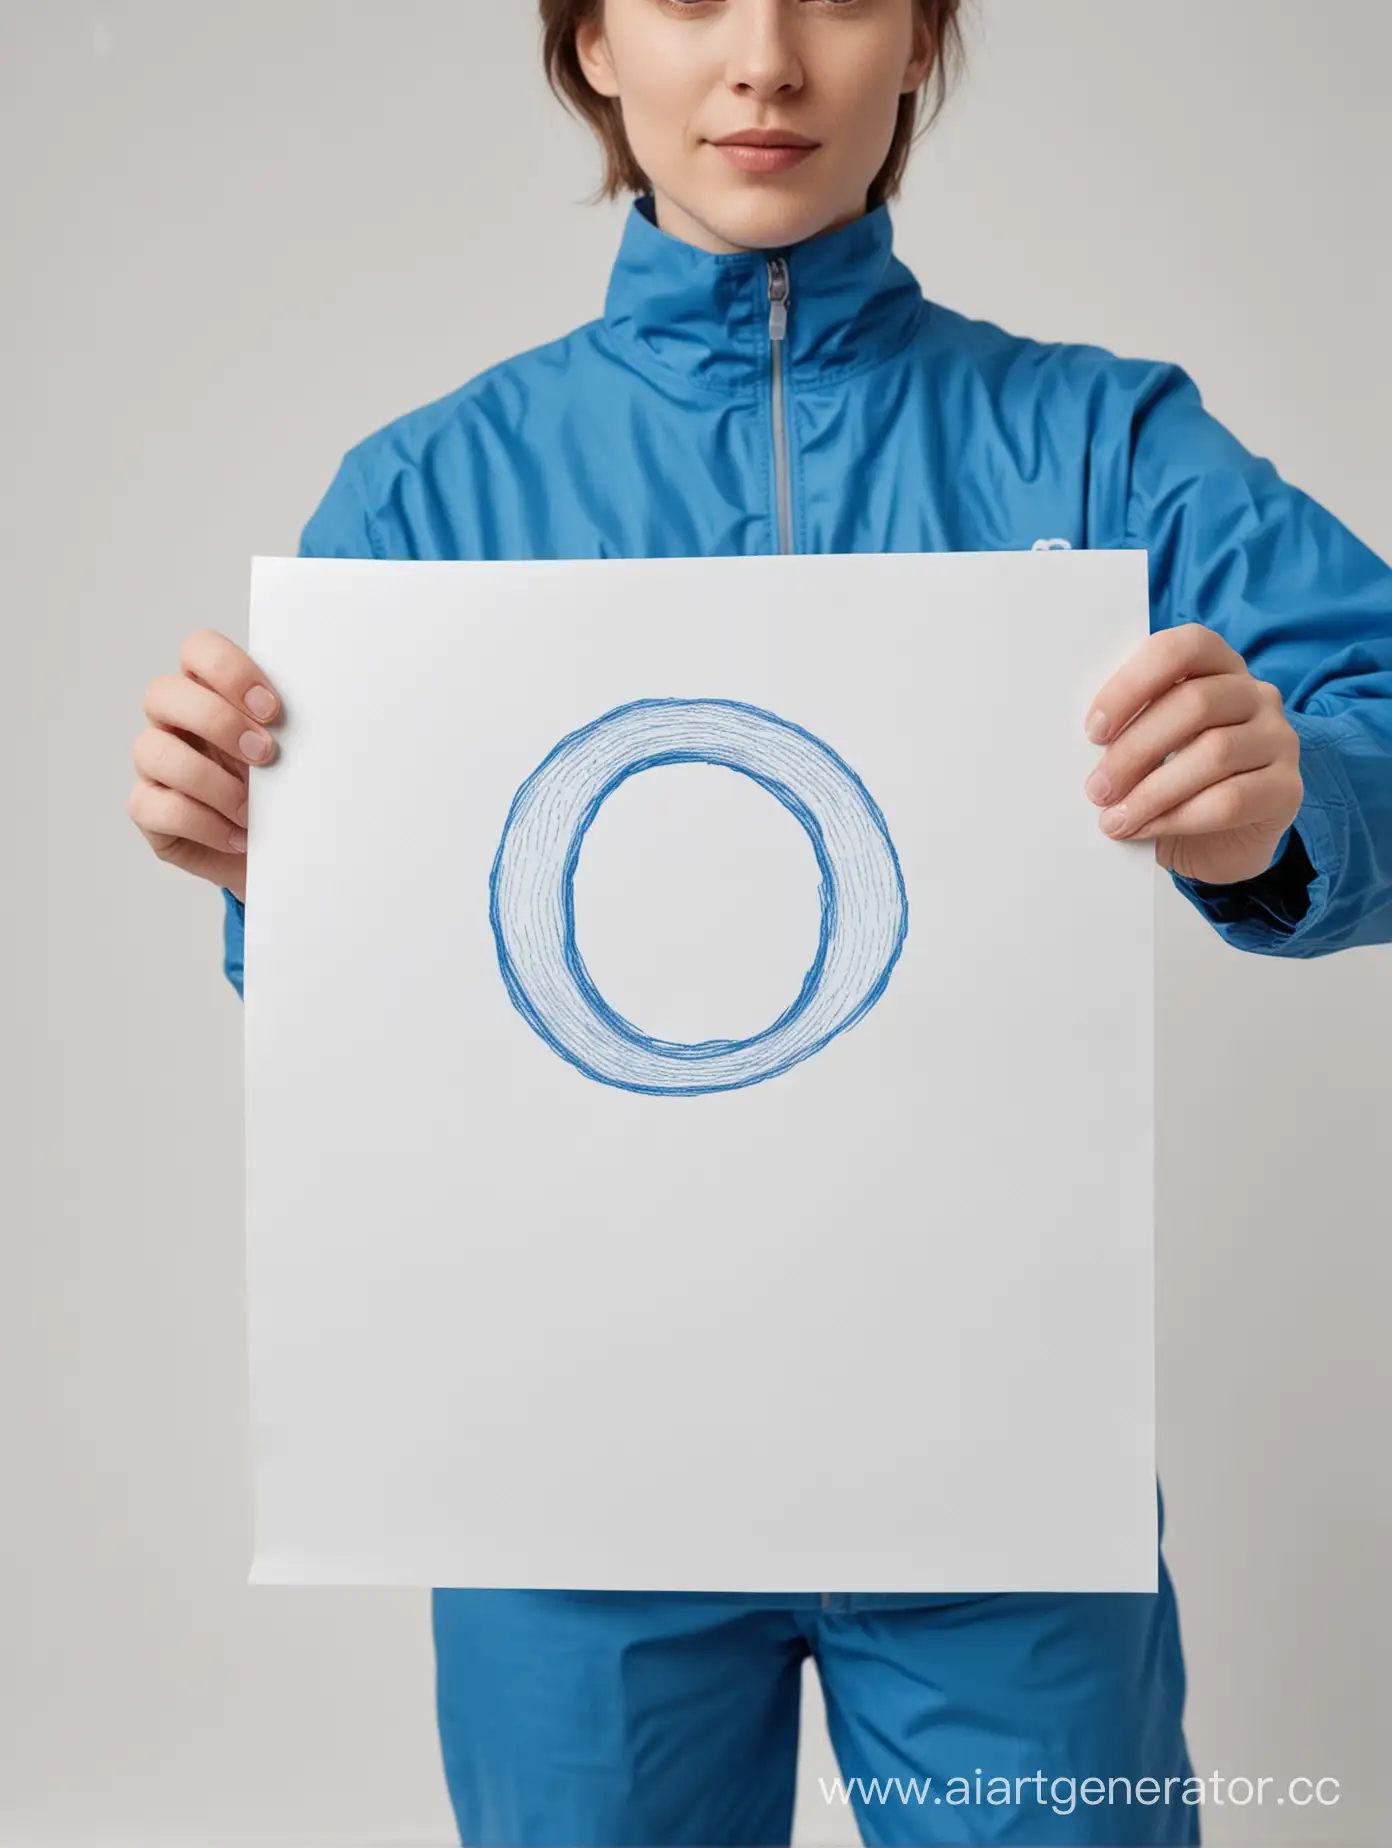 человек в синей одежде на белом фоне показывают букву "О" нарисованную на листе бумаги